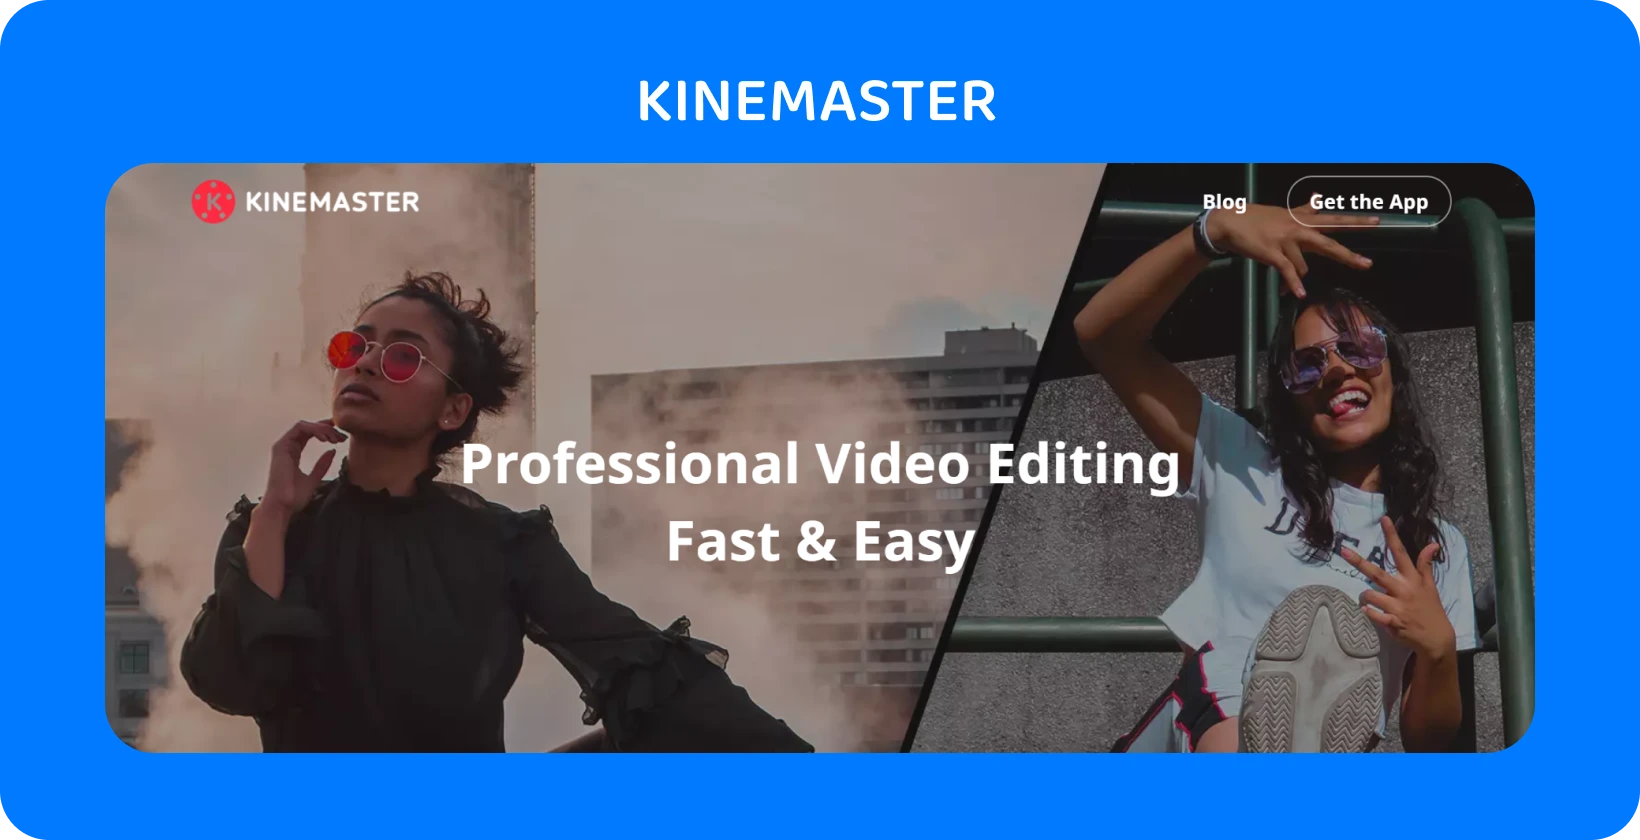 KineMaster פרסומת אפליקציה עם שתי דוגמניות בפוזה, תוך הדגשת עריכת וידאו מקצועית מהירה וקלה.